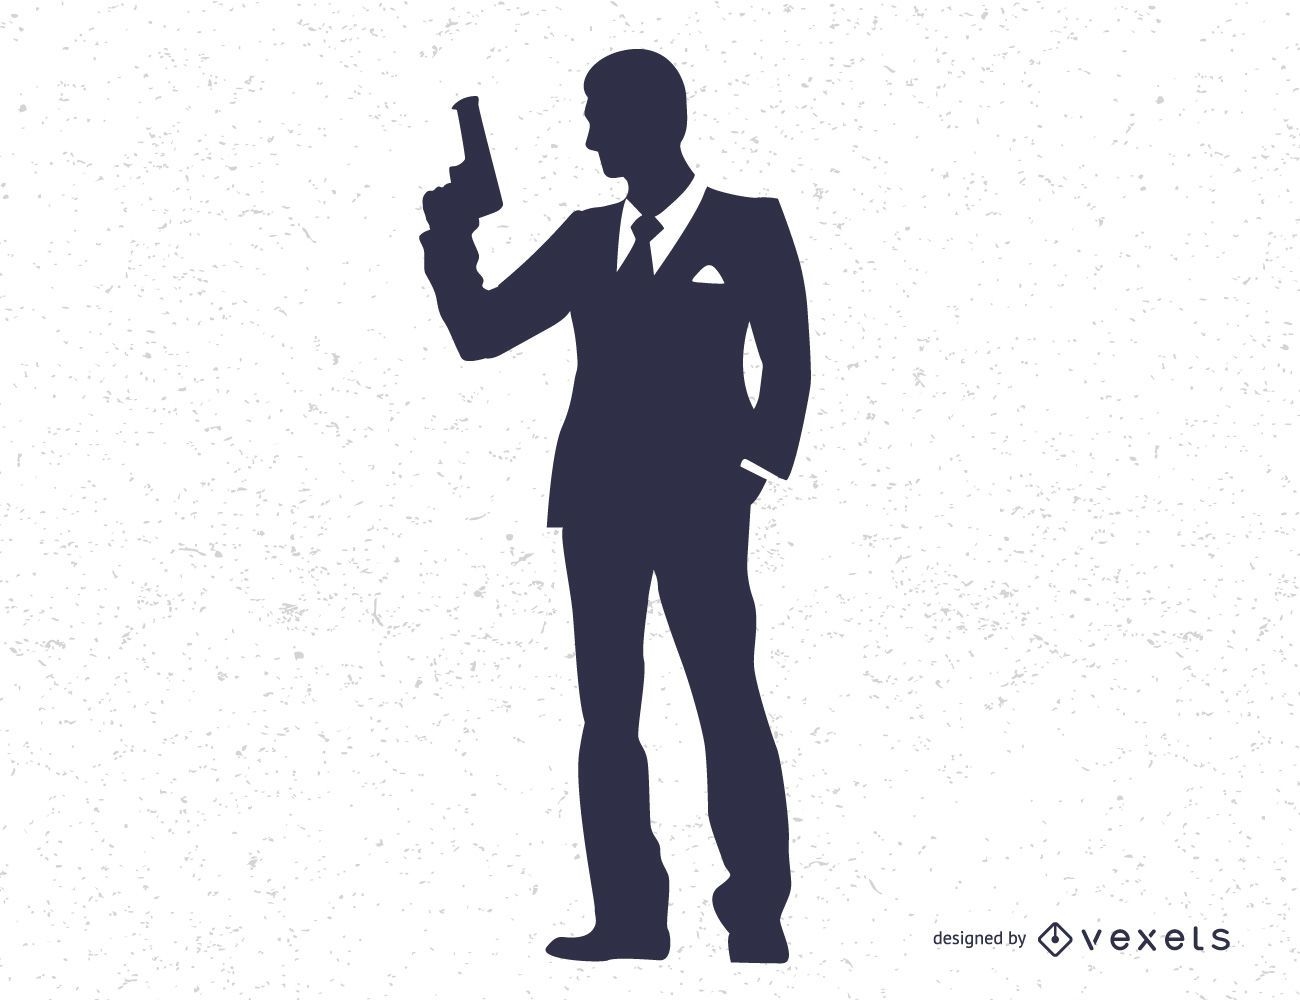 James Bond Secret Agent 007 Schwarz-Weiß-Silo